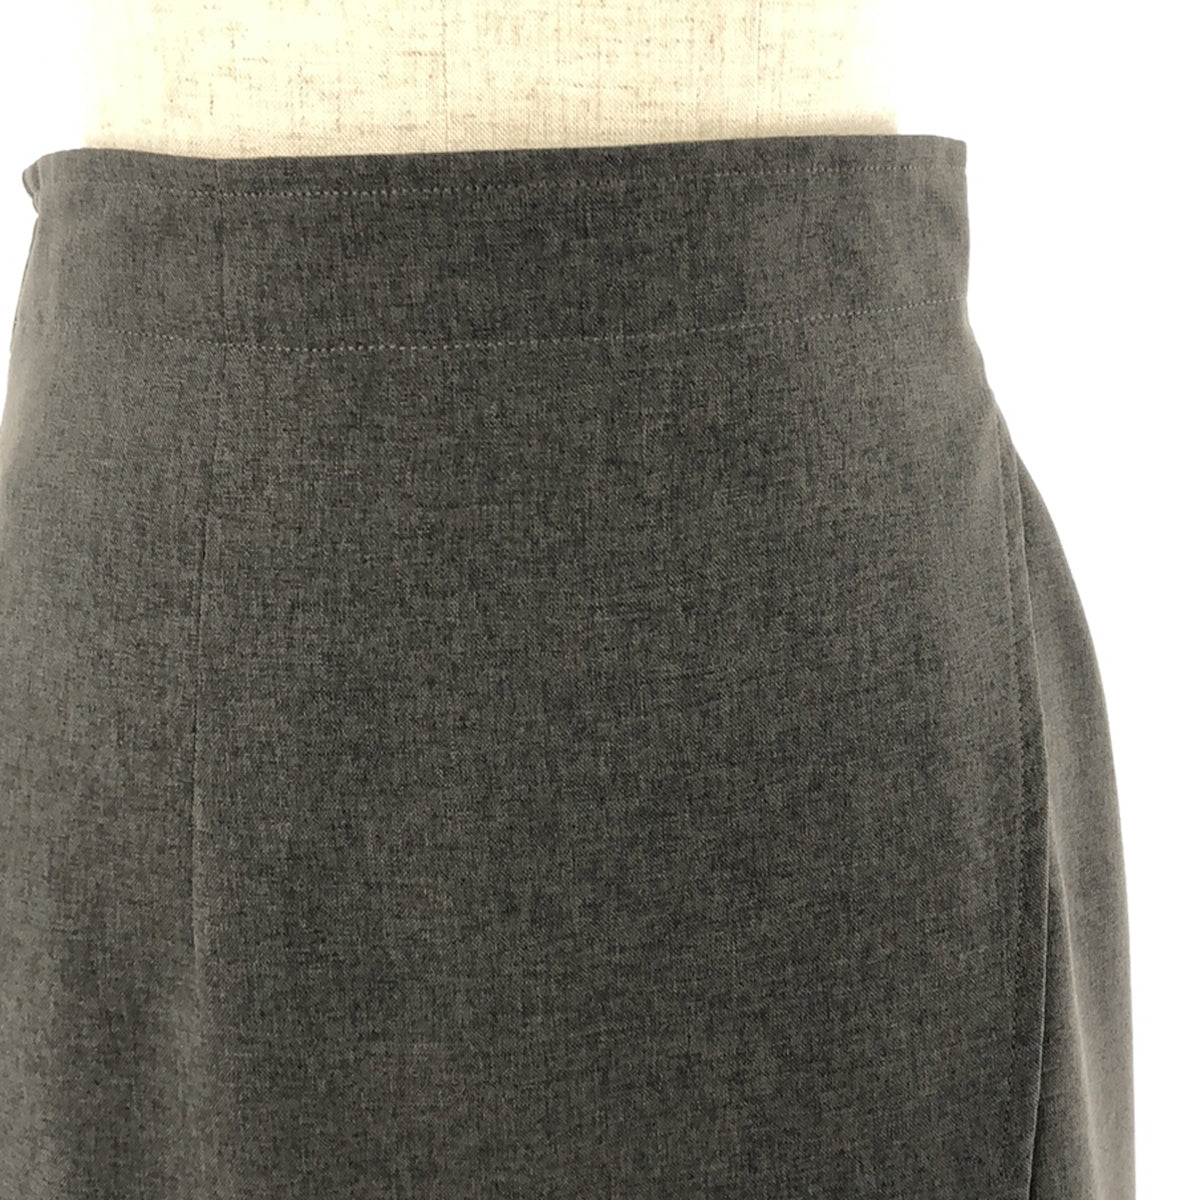 foufou / フーフー | high waist wrap skirt スカート | 0 | レディース